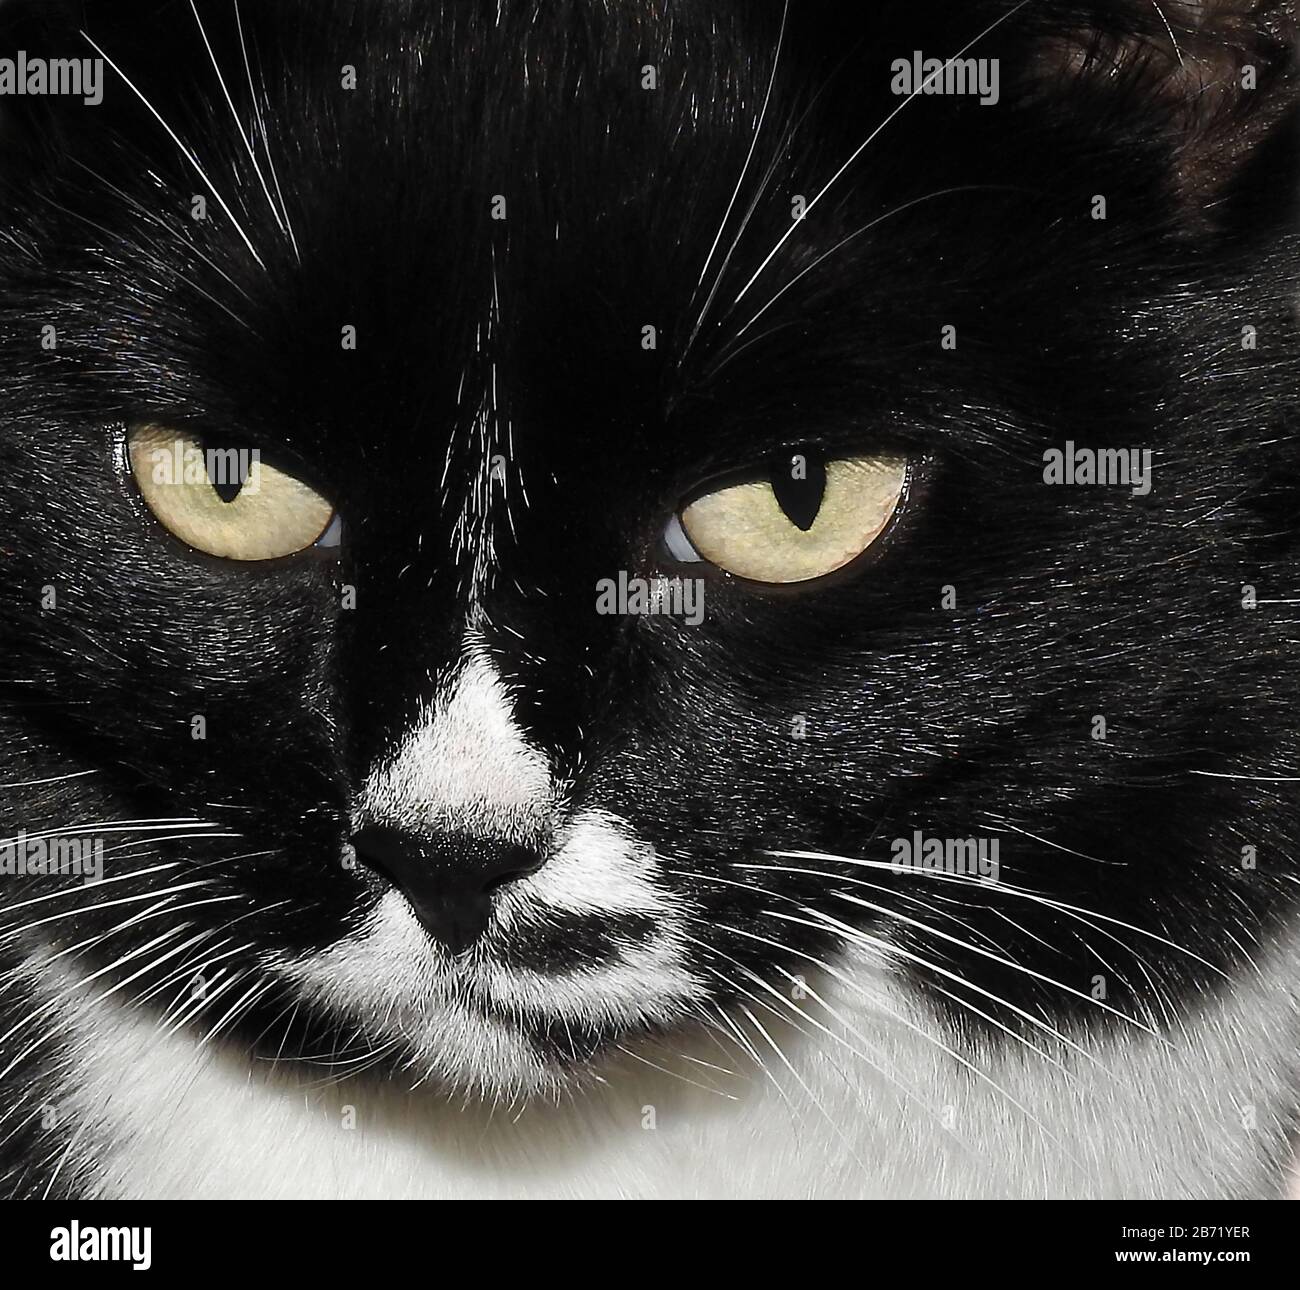 Le visage d'un chat judgmental Banque D'Images